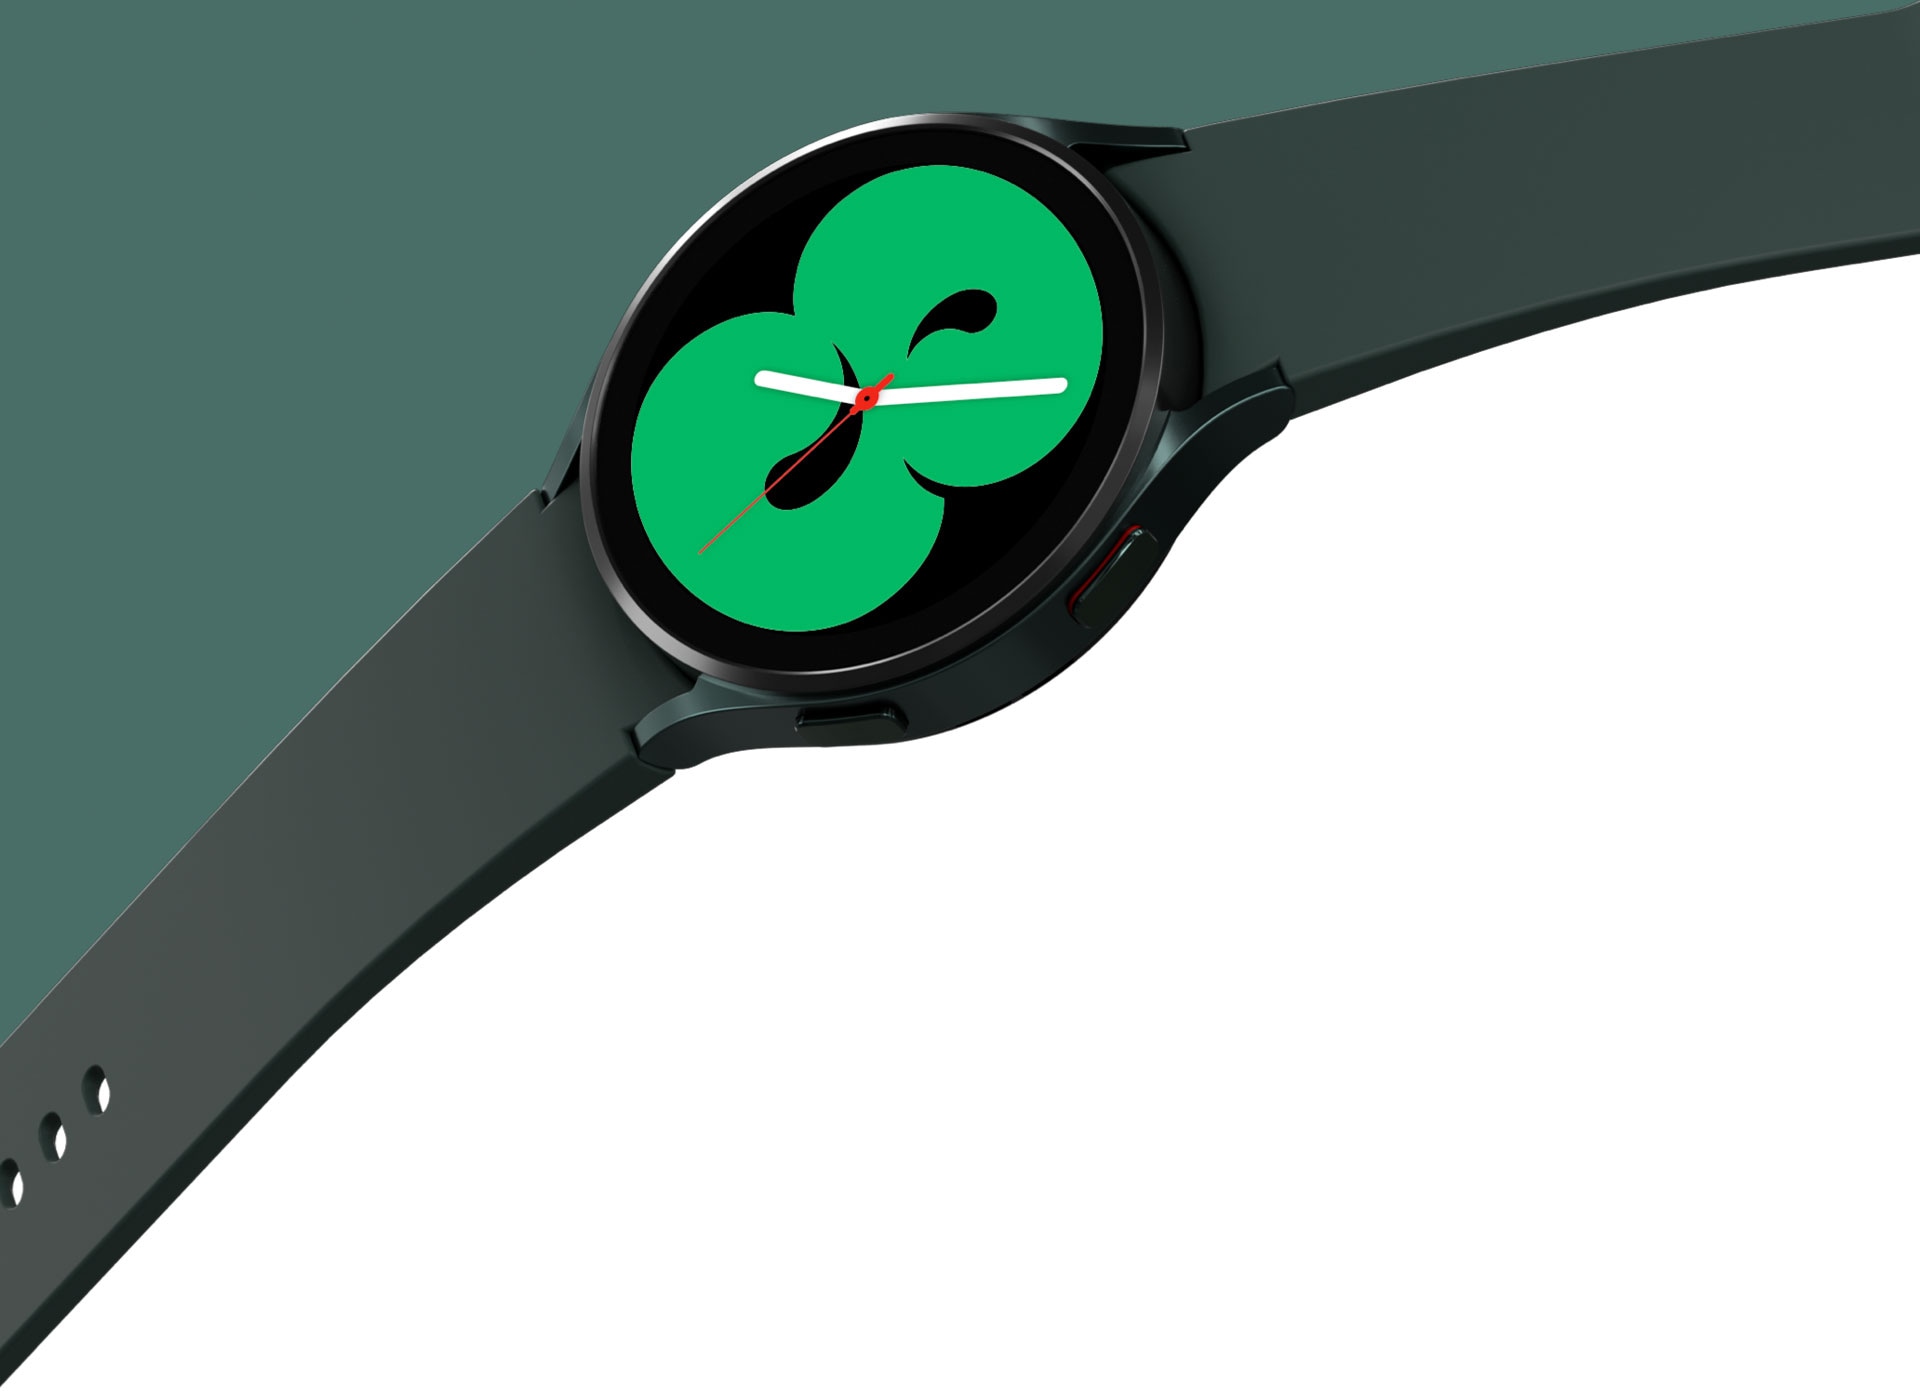 Une Galaxy Watch 4 verte est présentée avec un bracelet large. Le cadran de la montre présente l’un des designs, qui affiche l’heure dans une couleur verte.